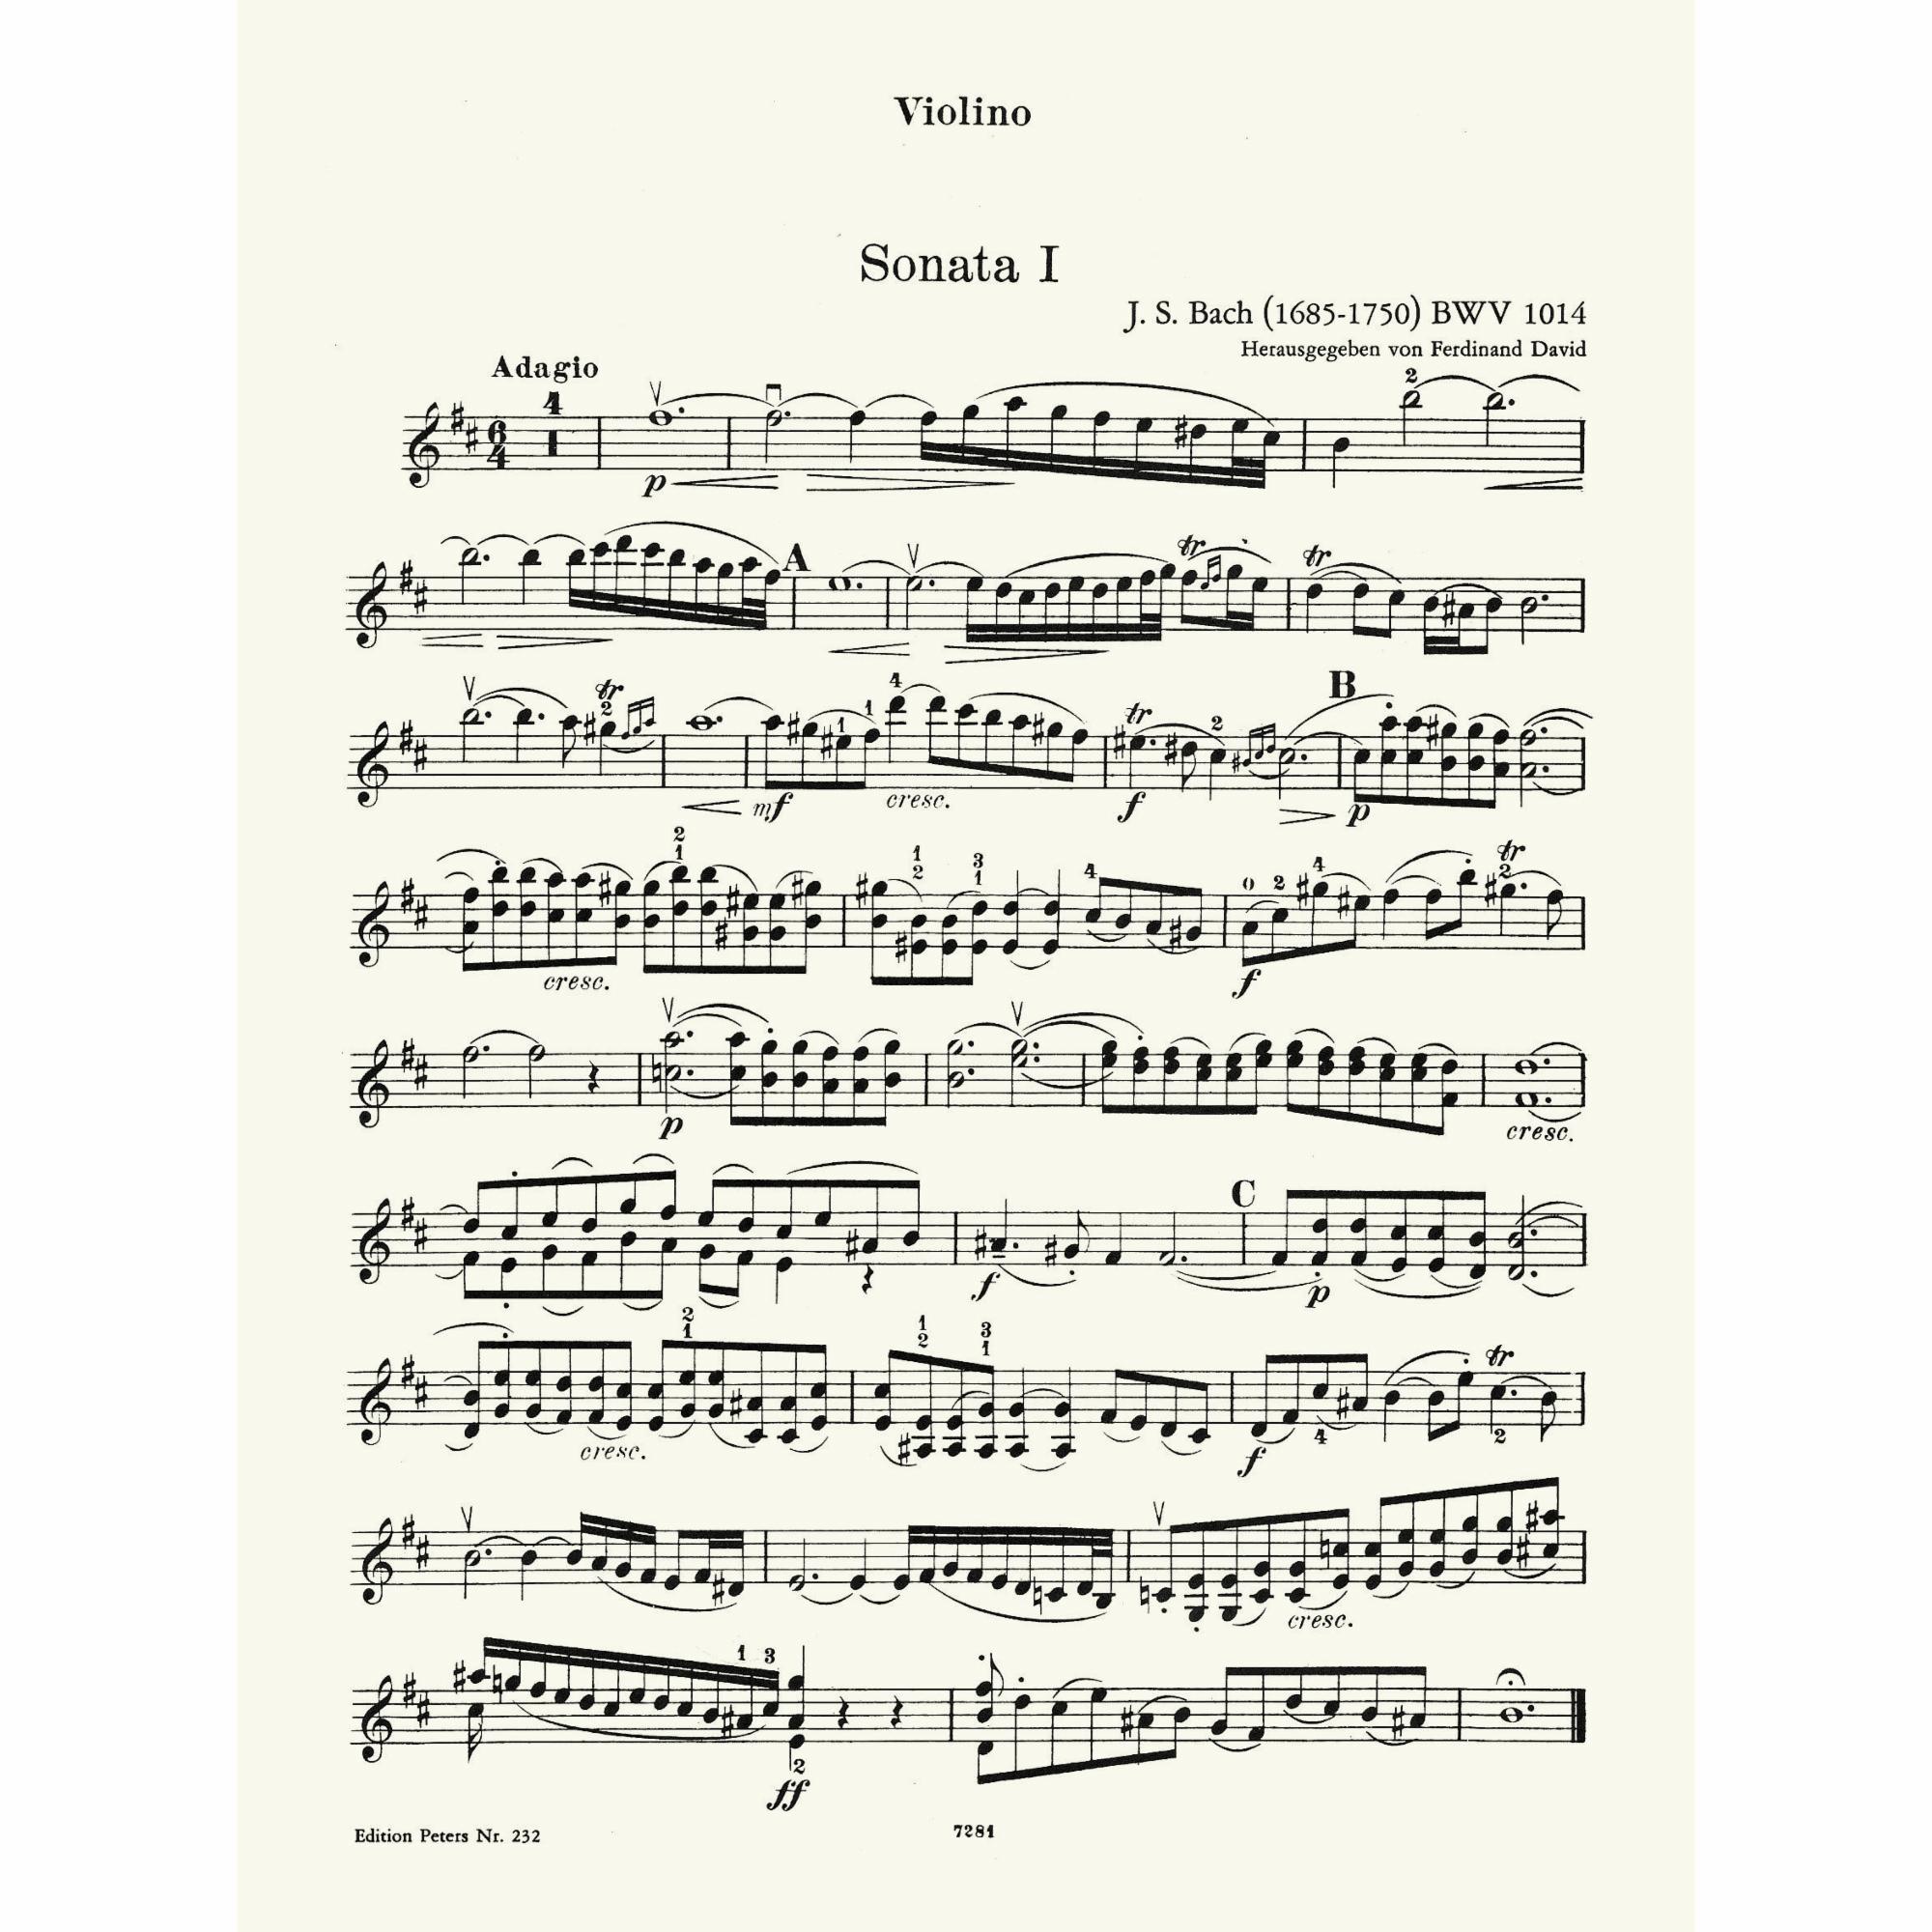 Sample: Vol. I, Violin (Pg. 1)